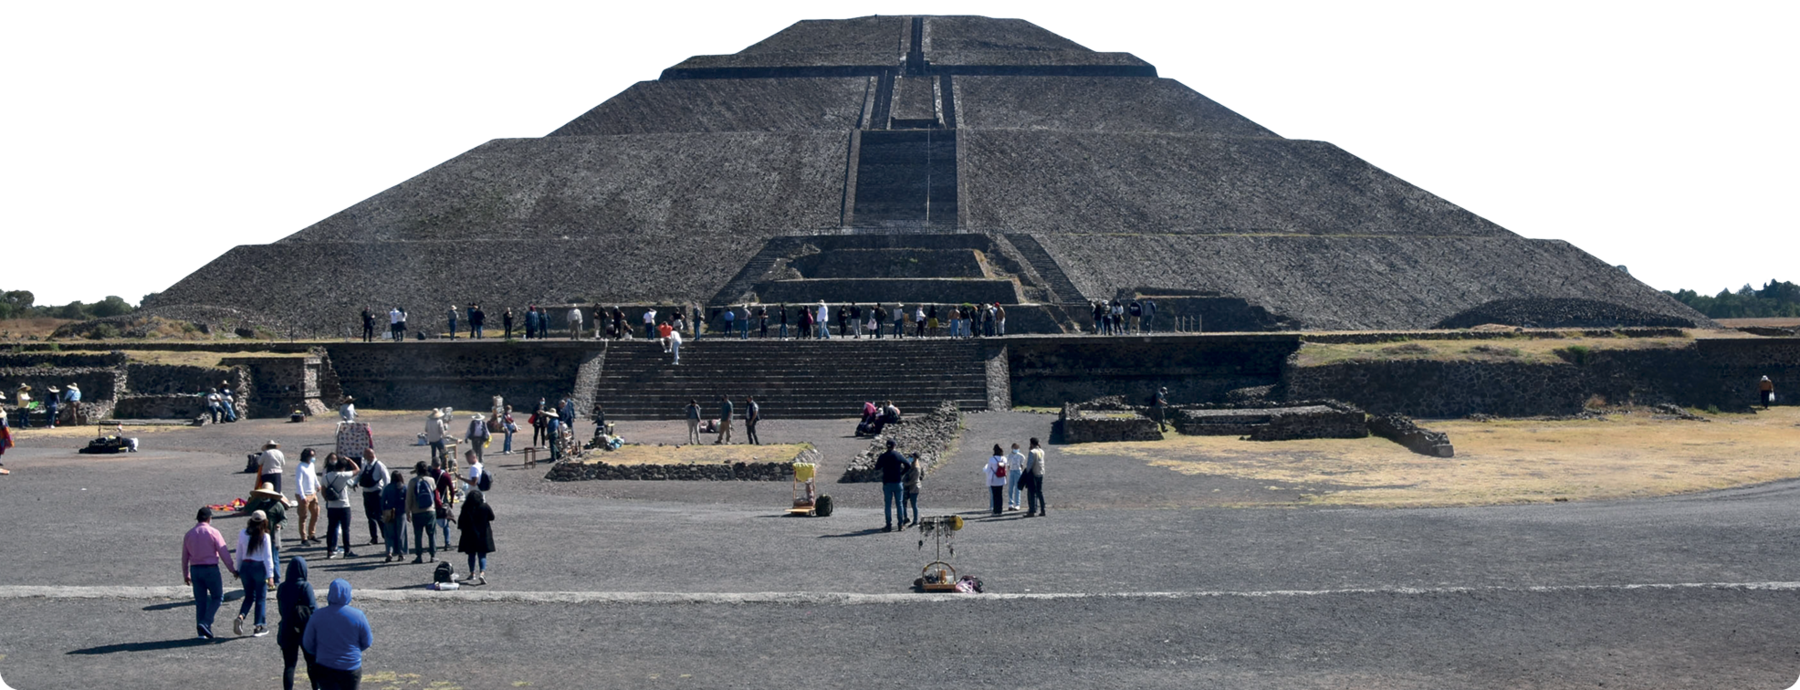 Fotografia. Uma pirâmide de pedra com uma escadaria central. Na frente, diversas pessoas olhando para a pirâmide e nas escadarias.